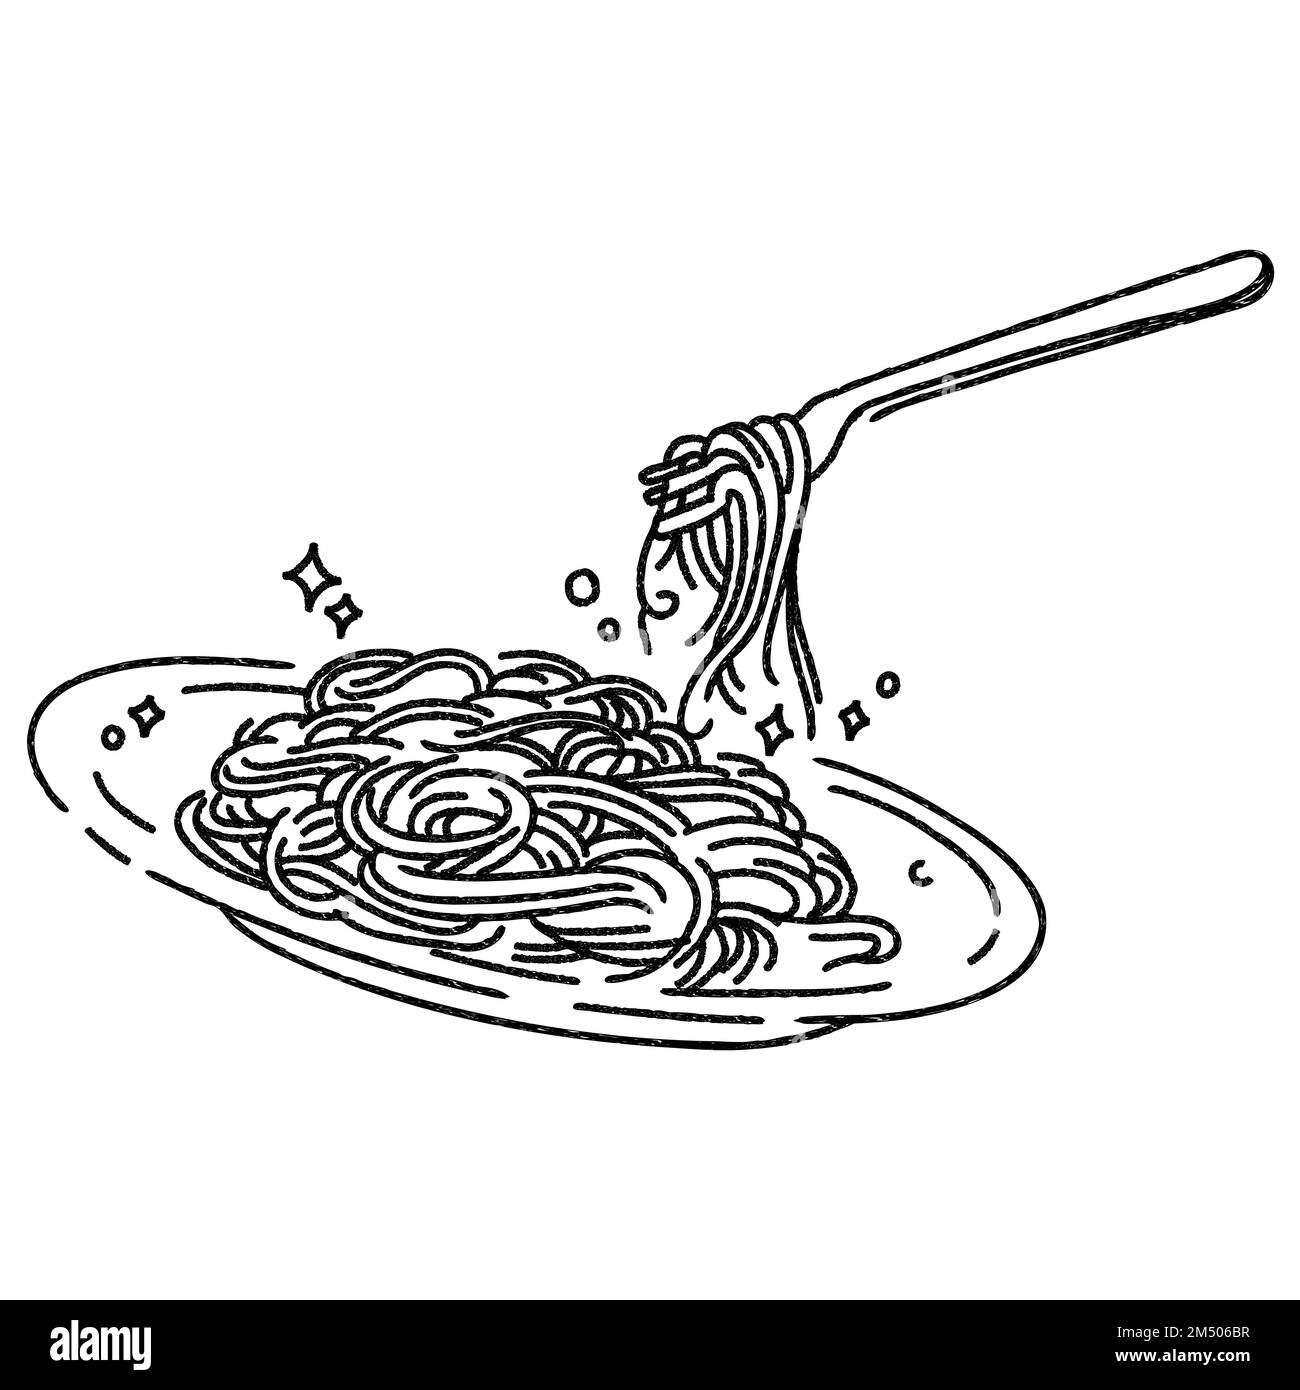 Madonna che mangia spaghetti poster, bianco e nero, stampa vintage